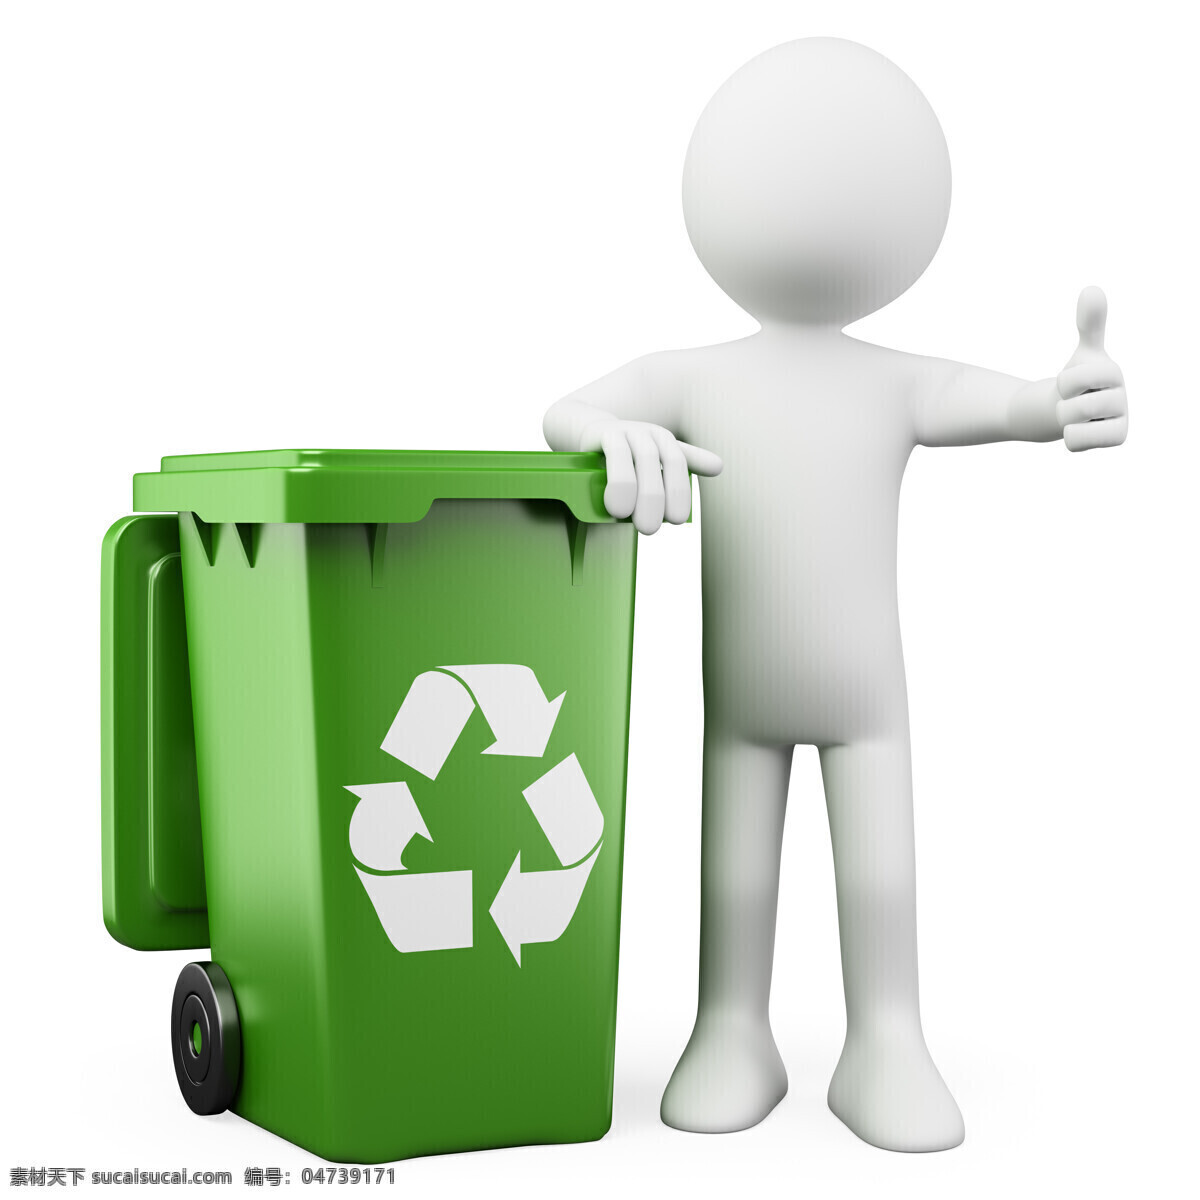 3d 小人 回收 垃圾桶 3d小人 立体小人 白色小人 回收垃圾桶 保护地球 绿色环保 生态环保 节能环保 环保概念 其他类别 生活百科